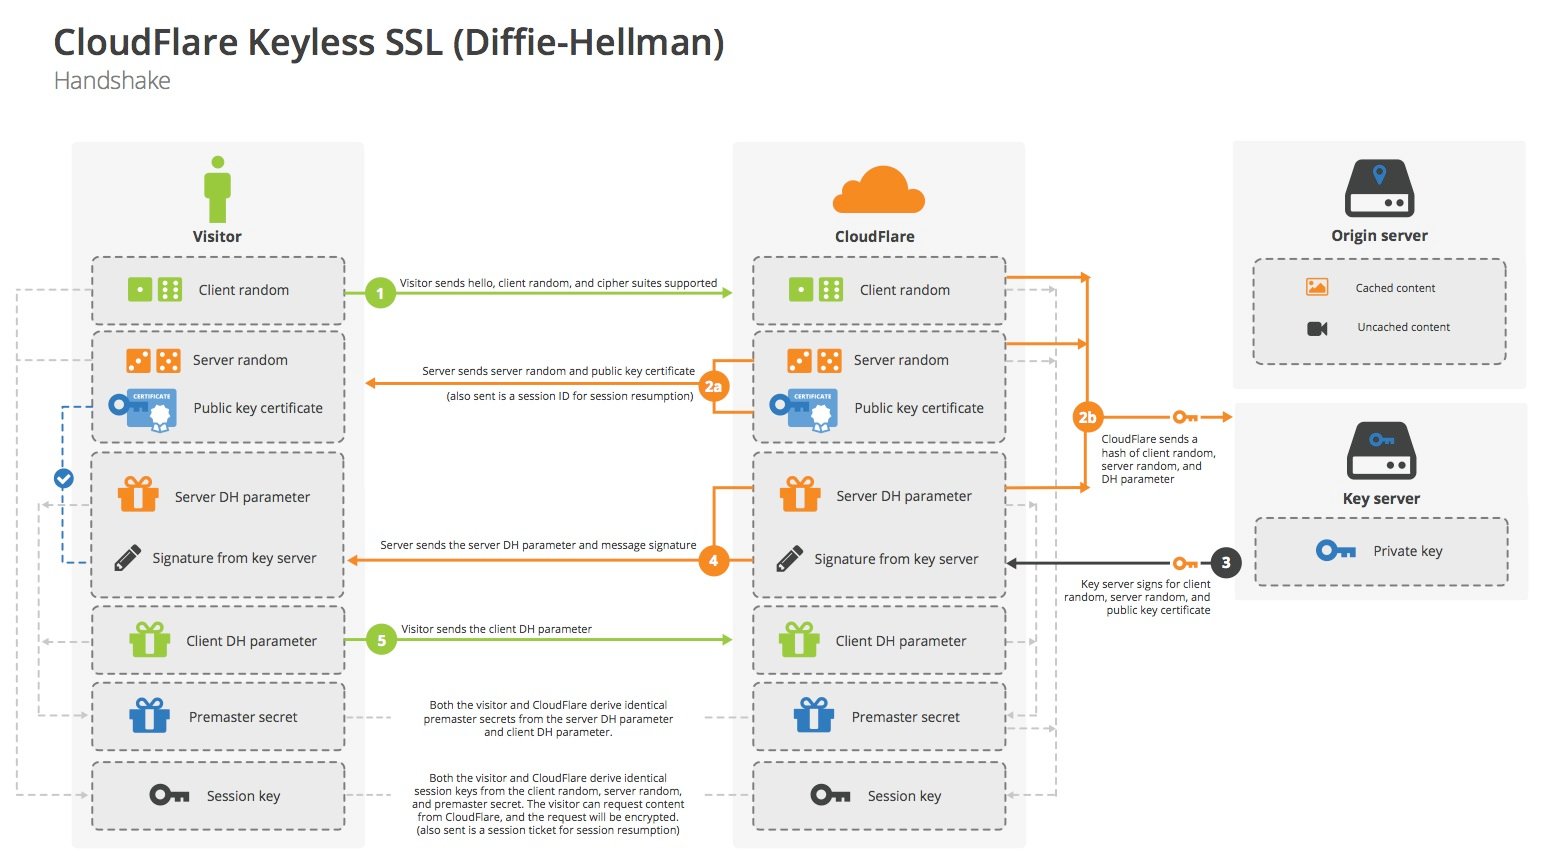 Keyless SSL handshake with Diffie-Hellman